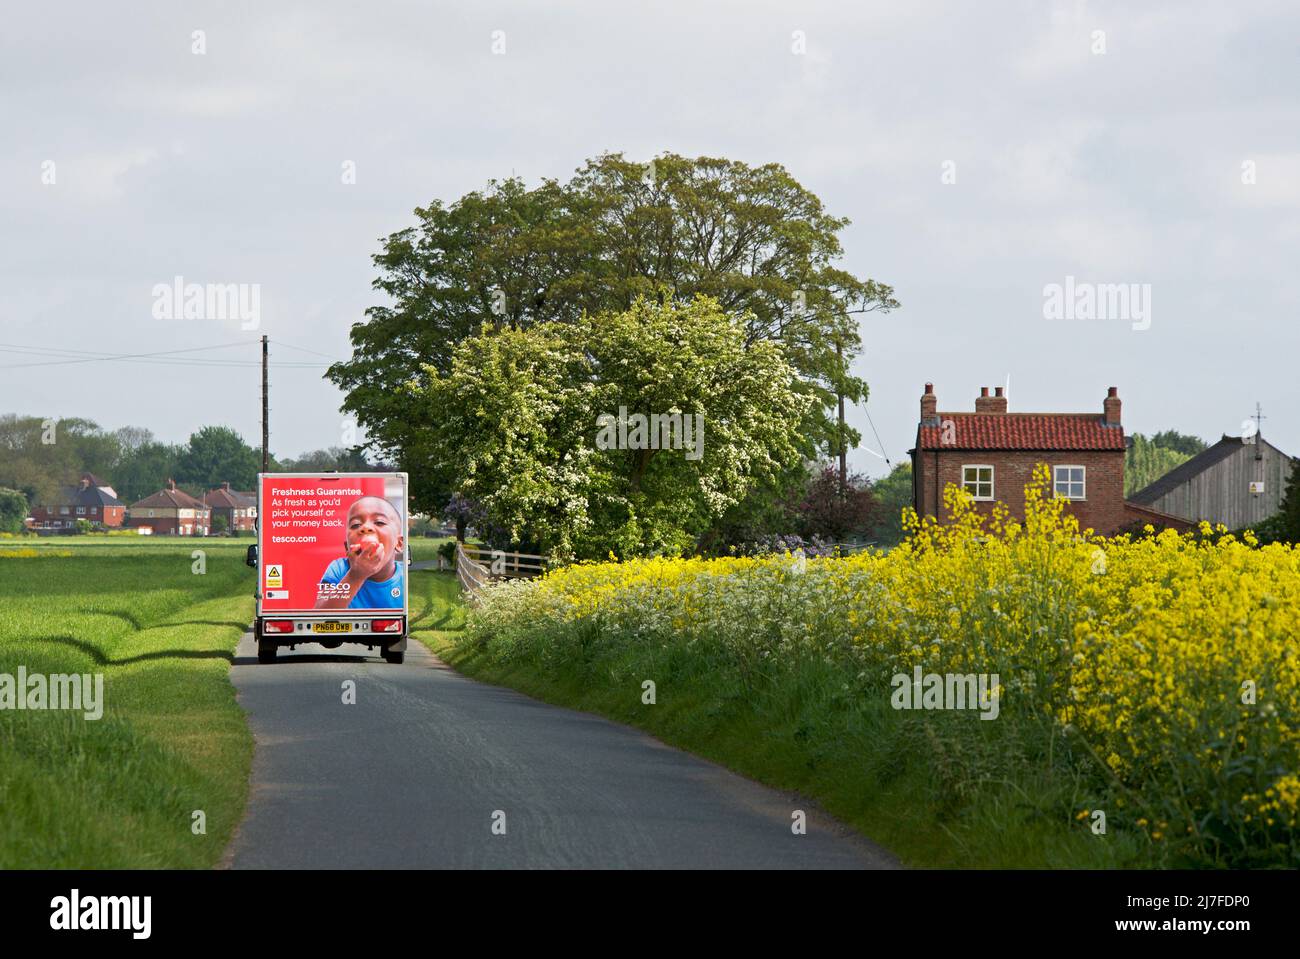 Furgoneta de reparto Tesco, casa y tierras de labranza cerca de Reedness, East Yorkshire, Inglaterra Reino Unido Foto de stock